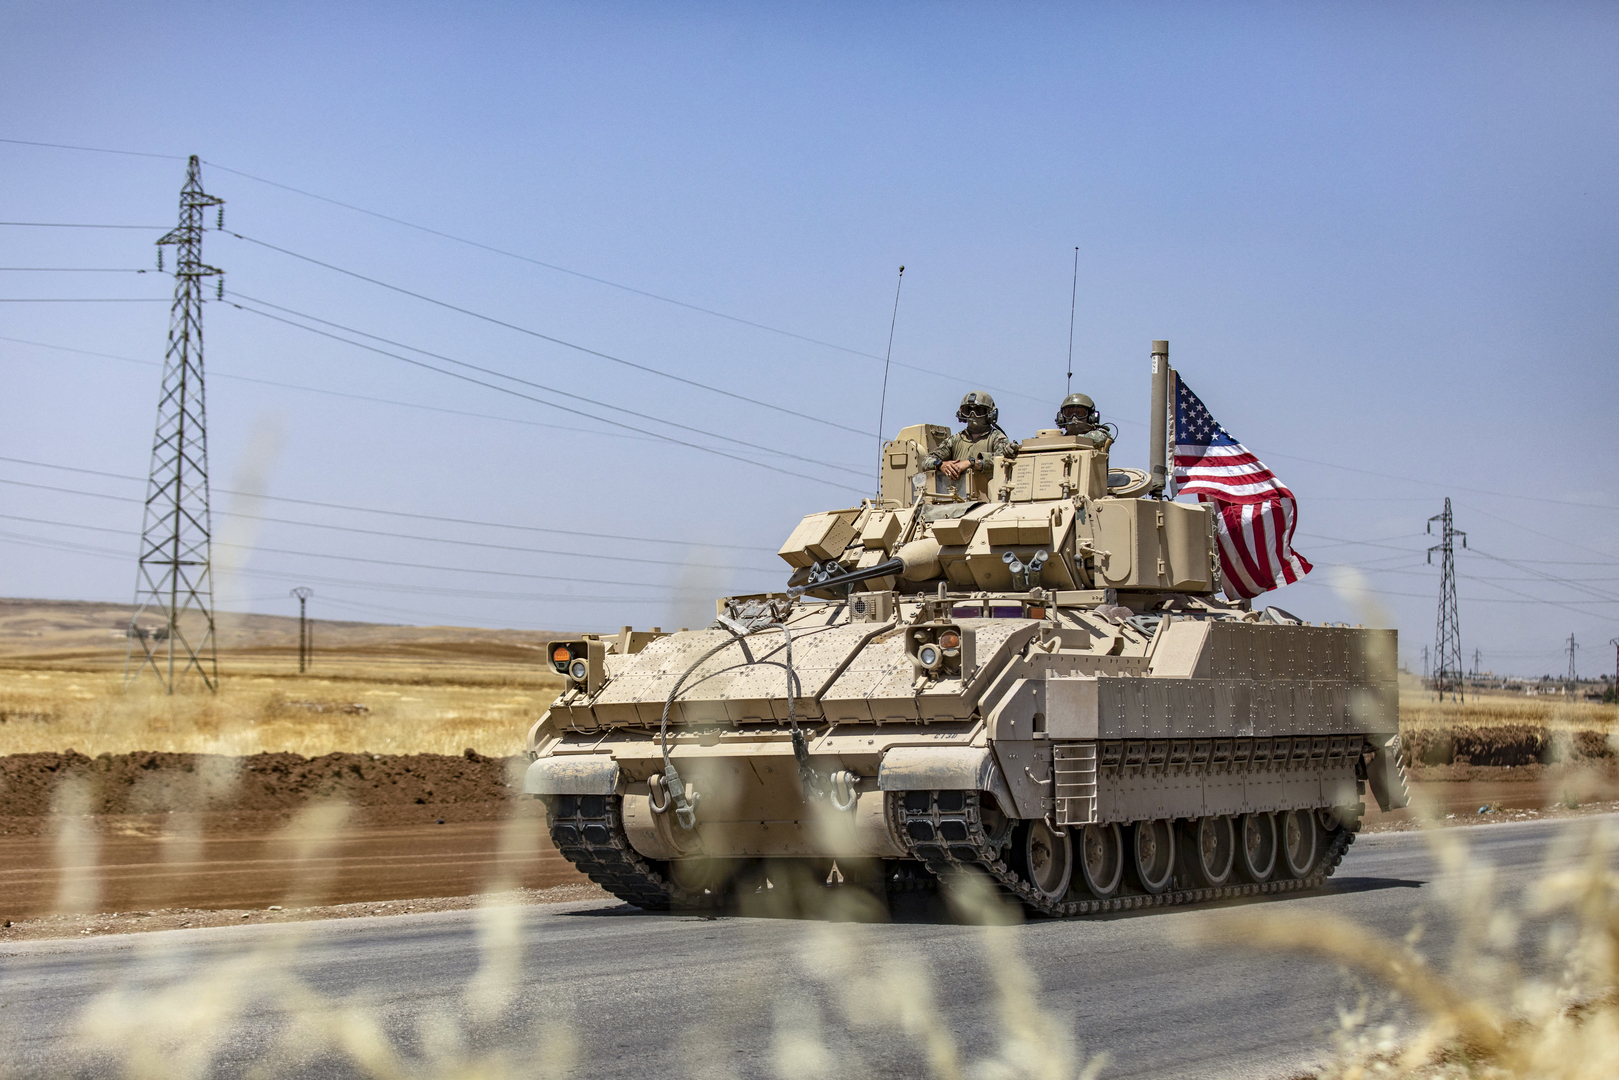 مسؤول أمريكي لرويترز: إحباط هجوم بمسّيرة استهدف القوات الأمريكية وقوات التحالف بقاعدة التنف بسوريا